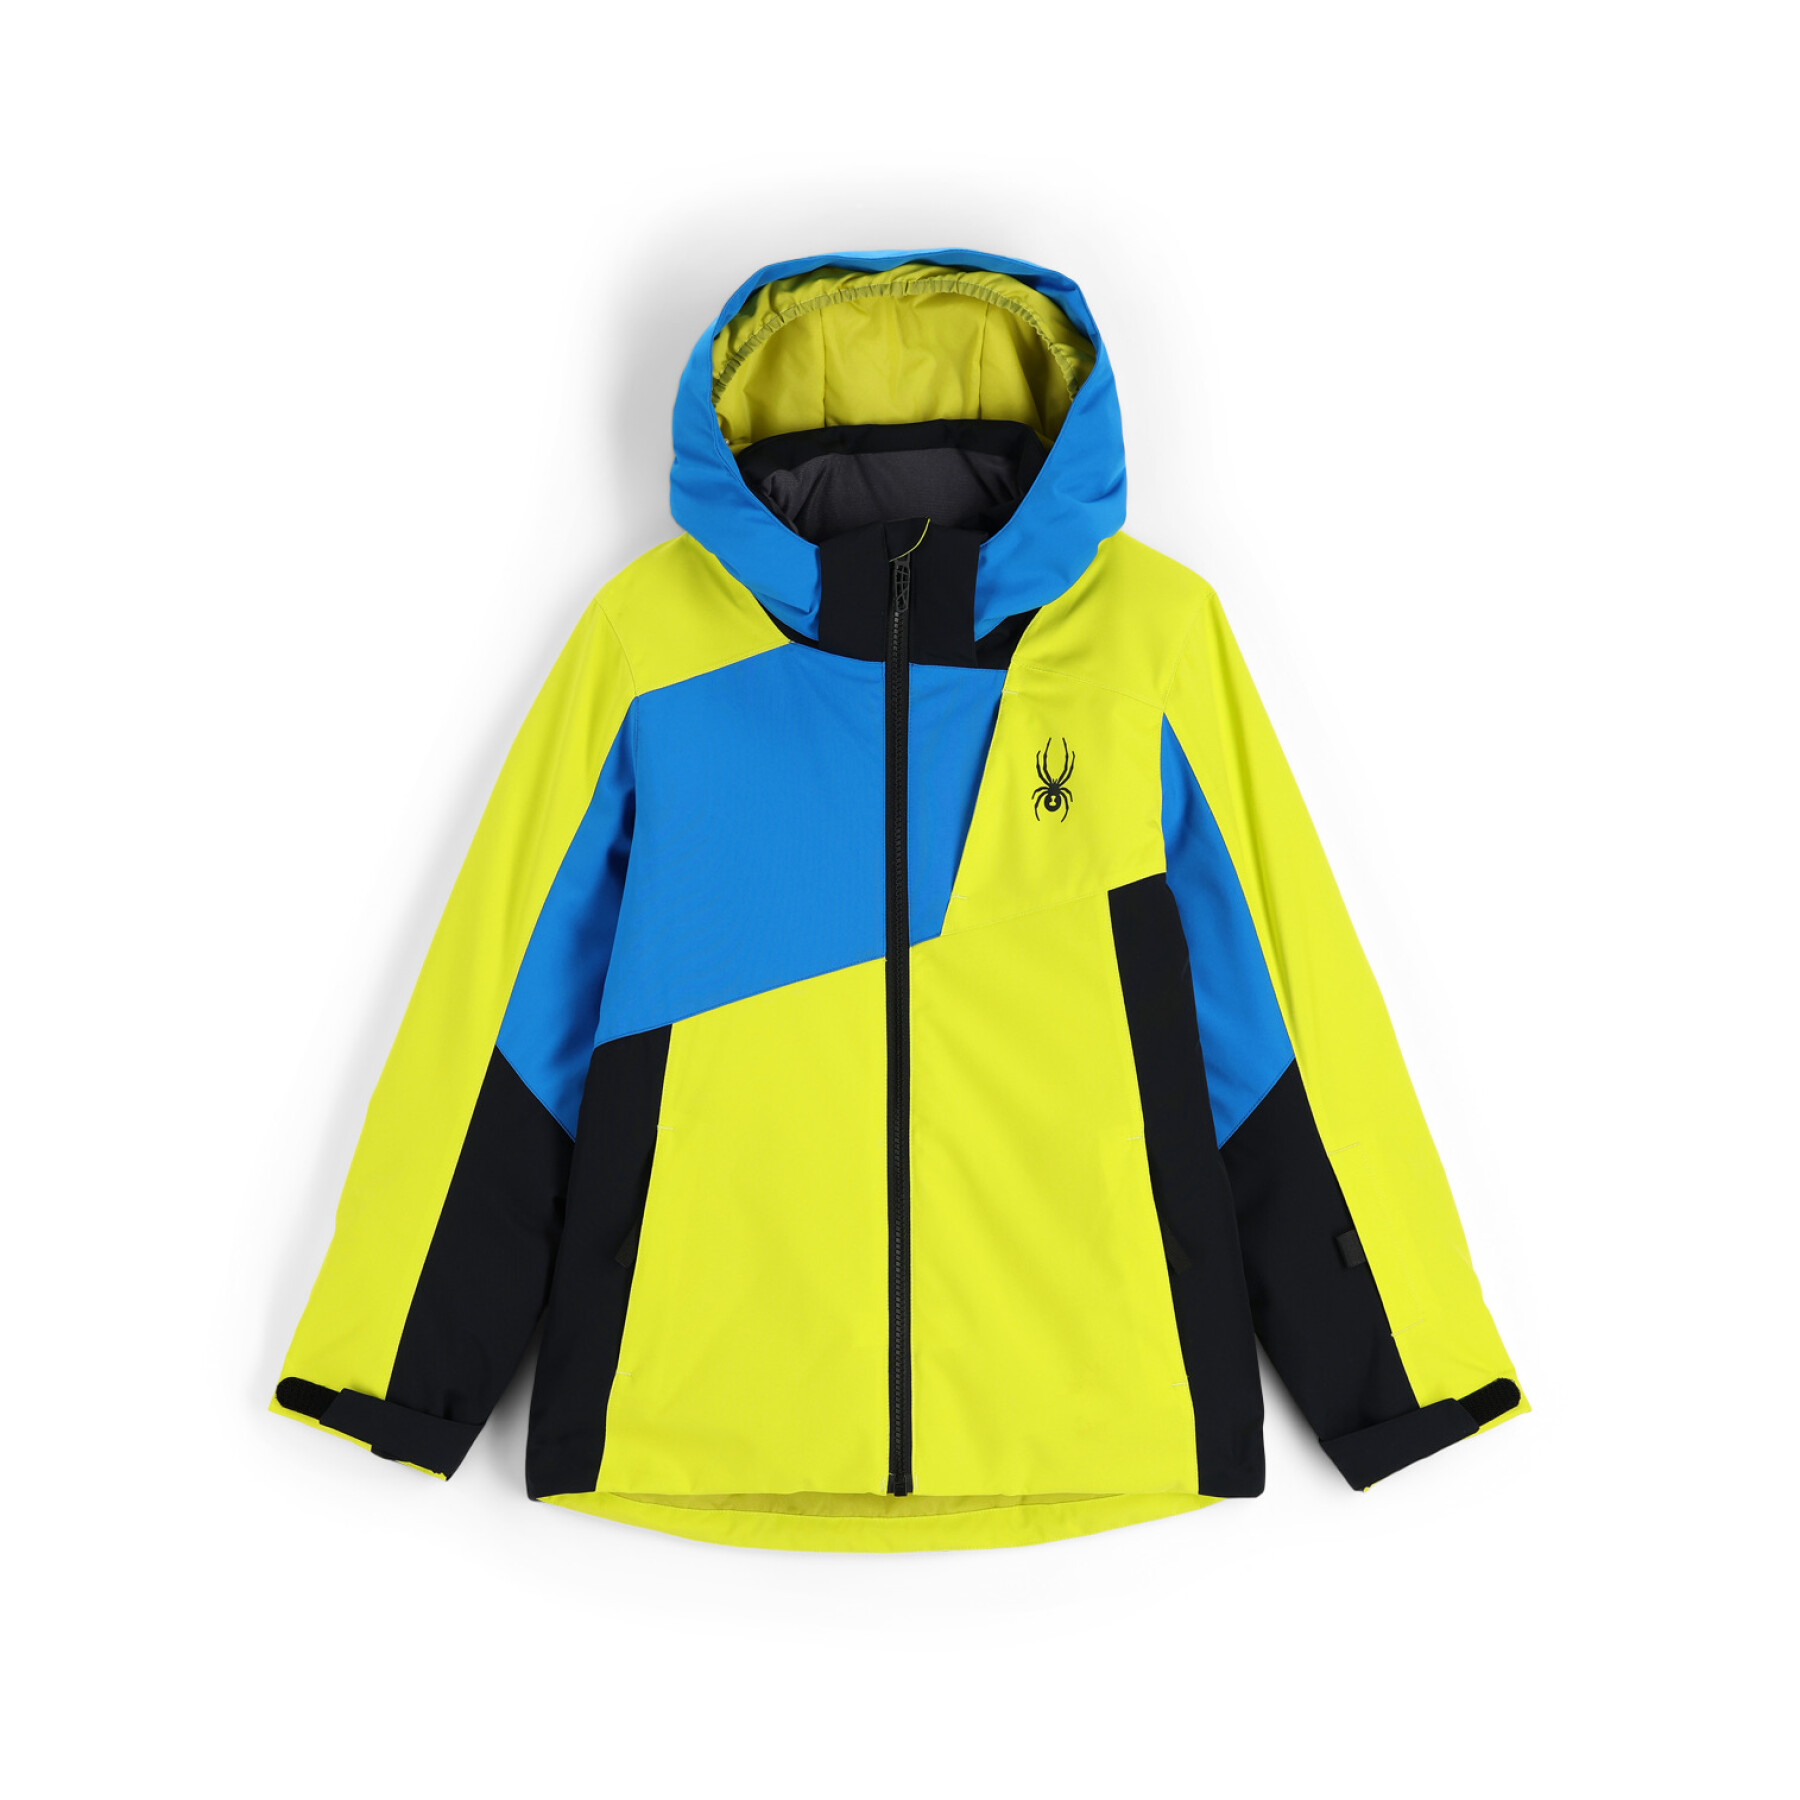 Children's ski jacket Spyder Ambush